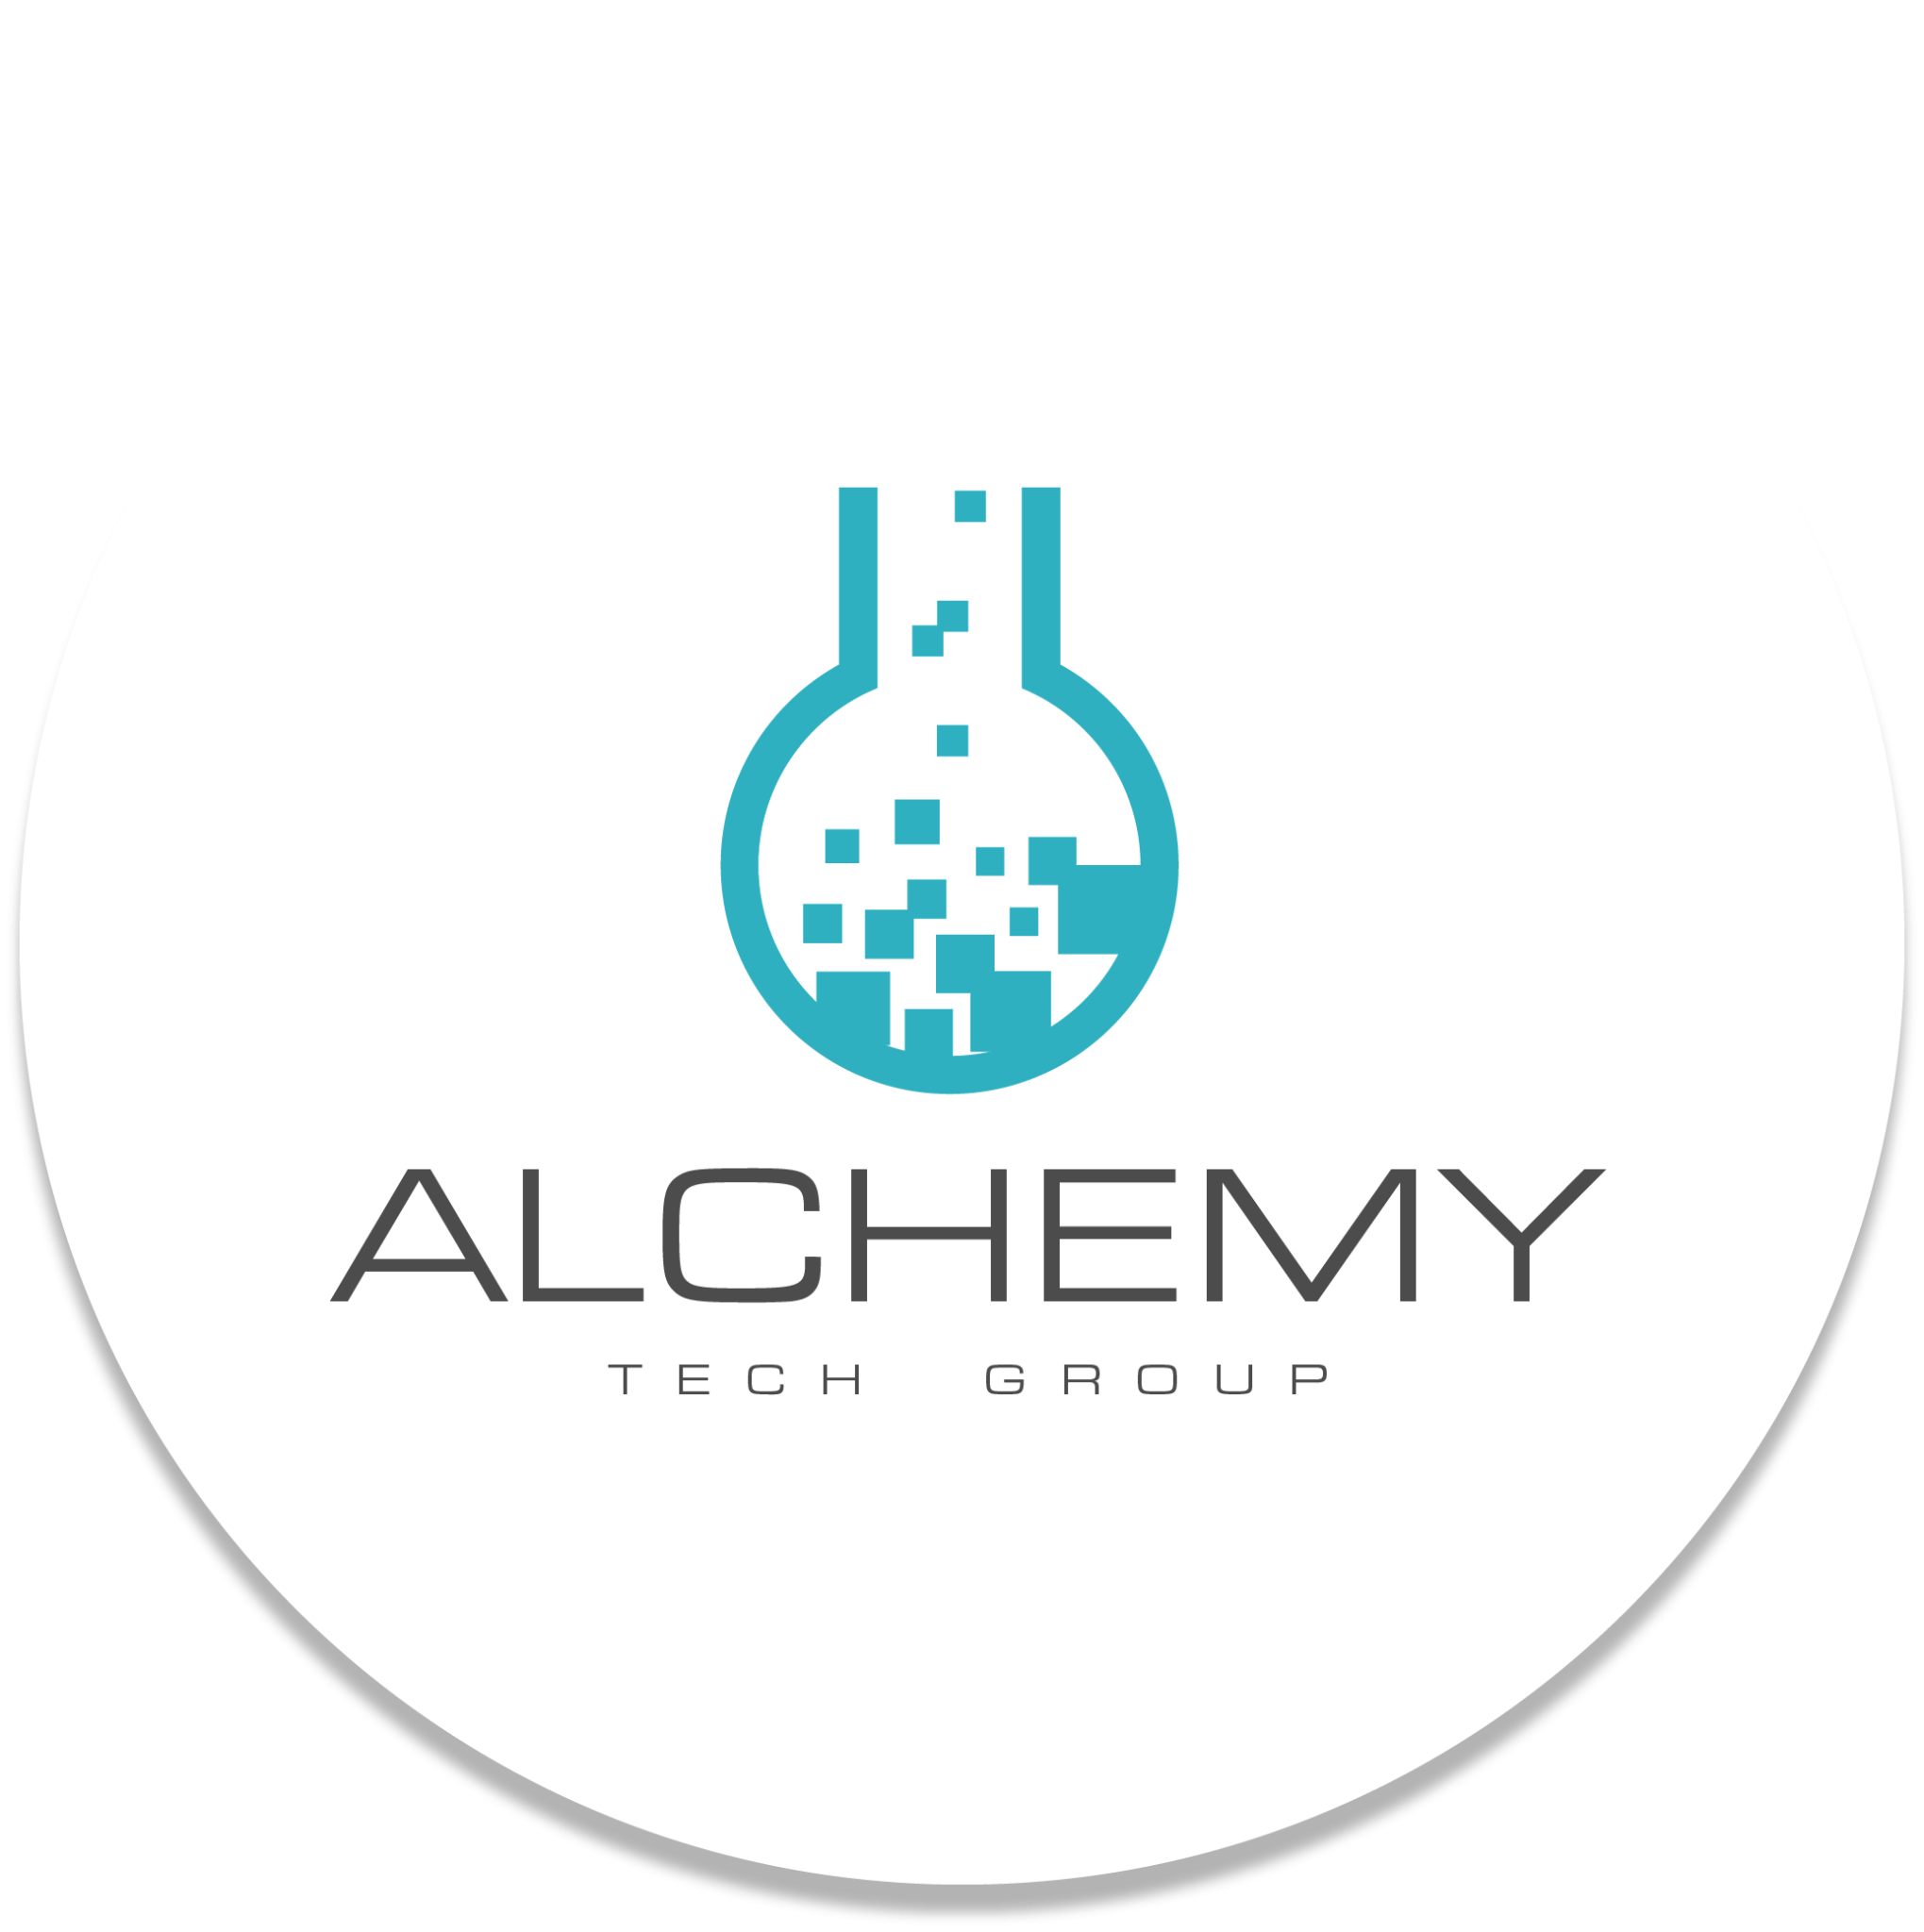 Alchemy Tech Group logo